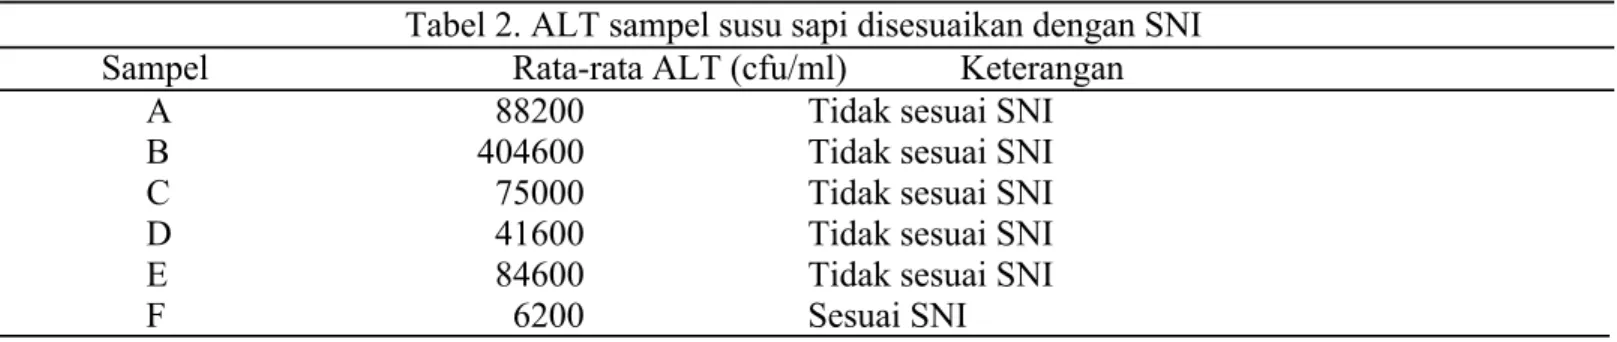 Tabel 2 menunjukkan nilai rata-rata ALT sampel susu yang telah disesuaikan dengan SNI (&lt;3x10 4 CFU/ml) 9 